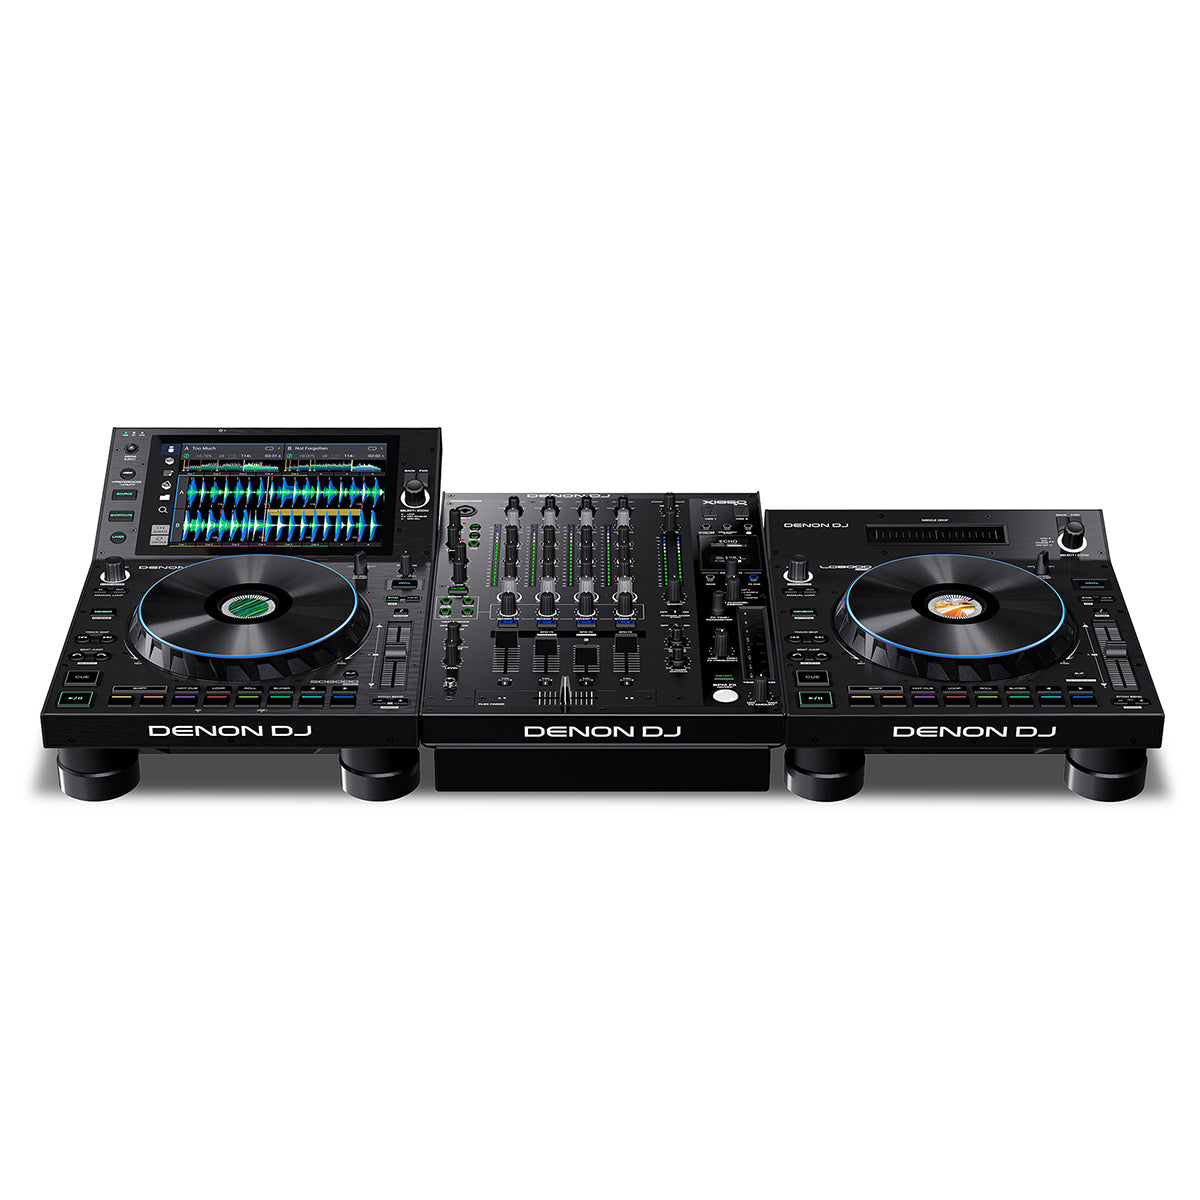 Denon DJ SC6000 + X1850 + FREE LC6000 Bundle